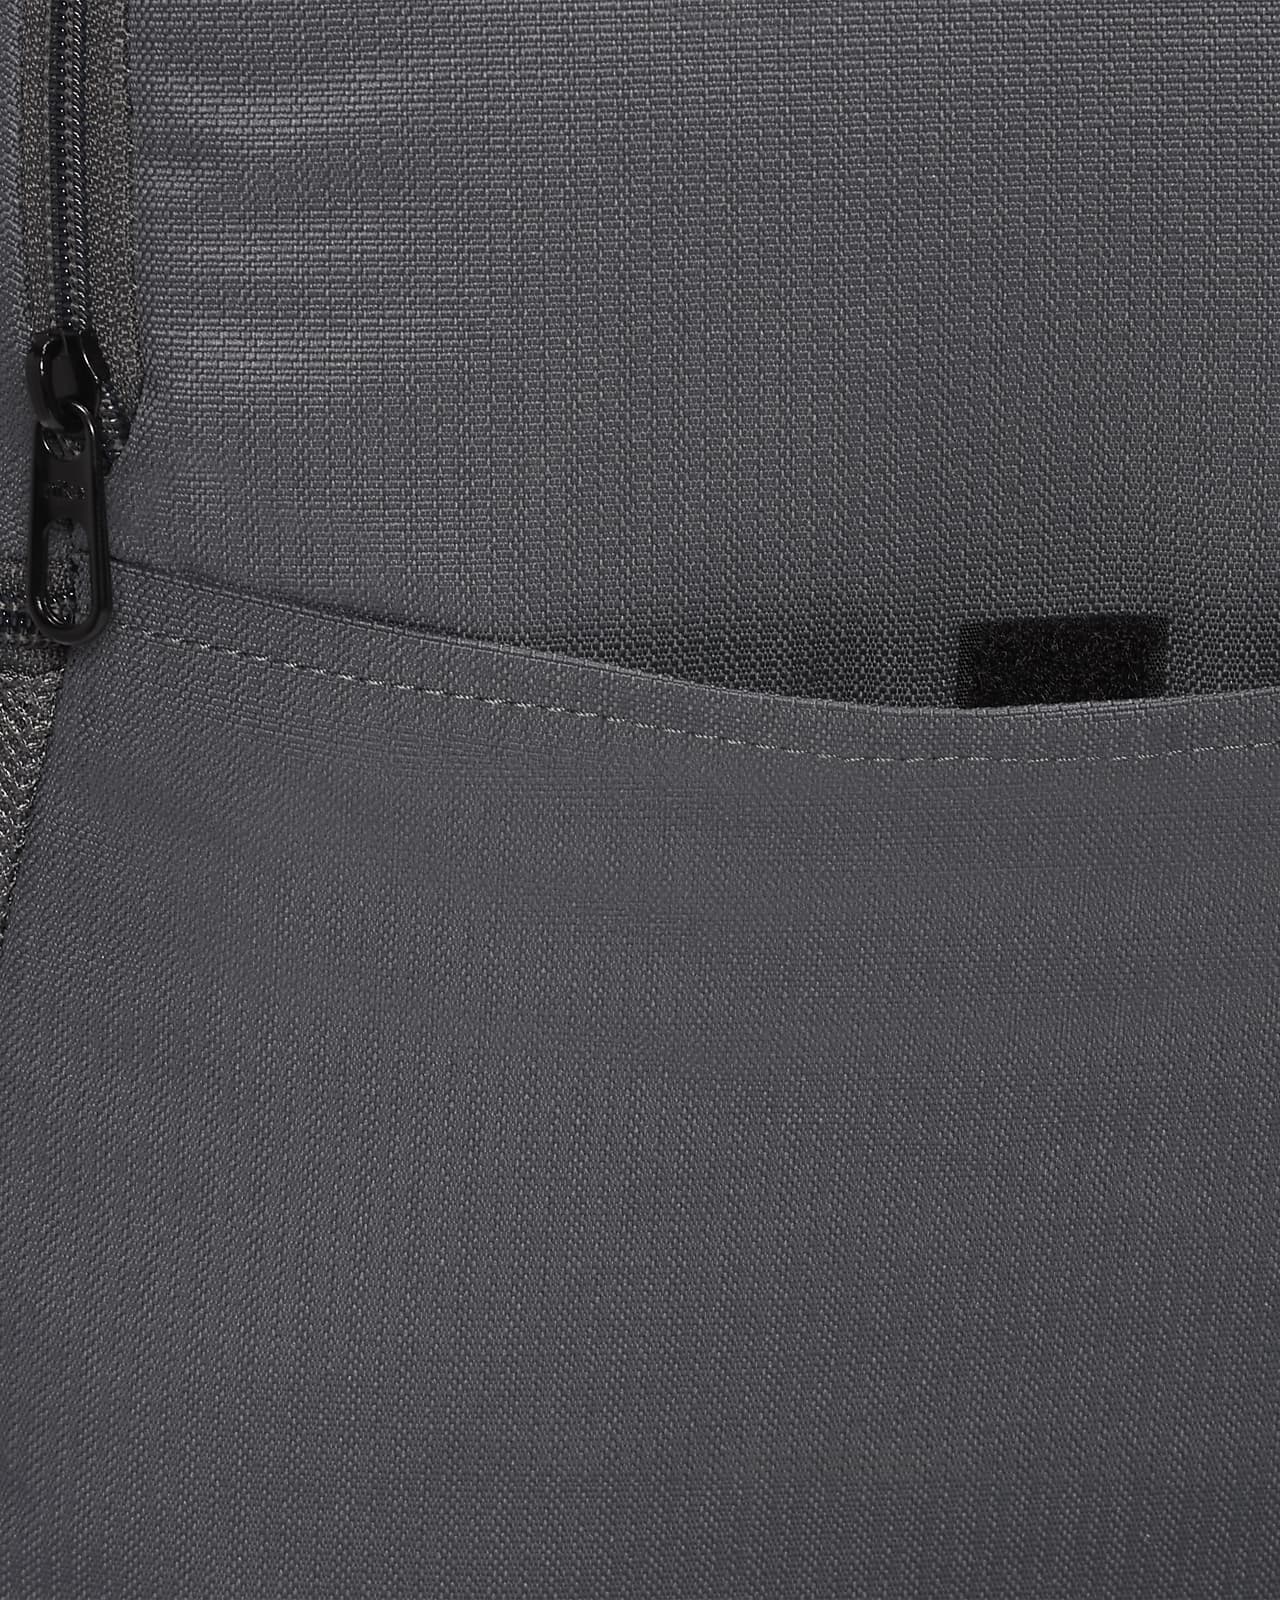 Nike Brasilia Winterized Graphic Training Backpack Black (Large, 24 L) :  : Moda